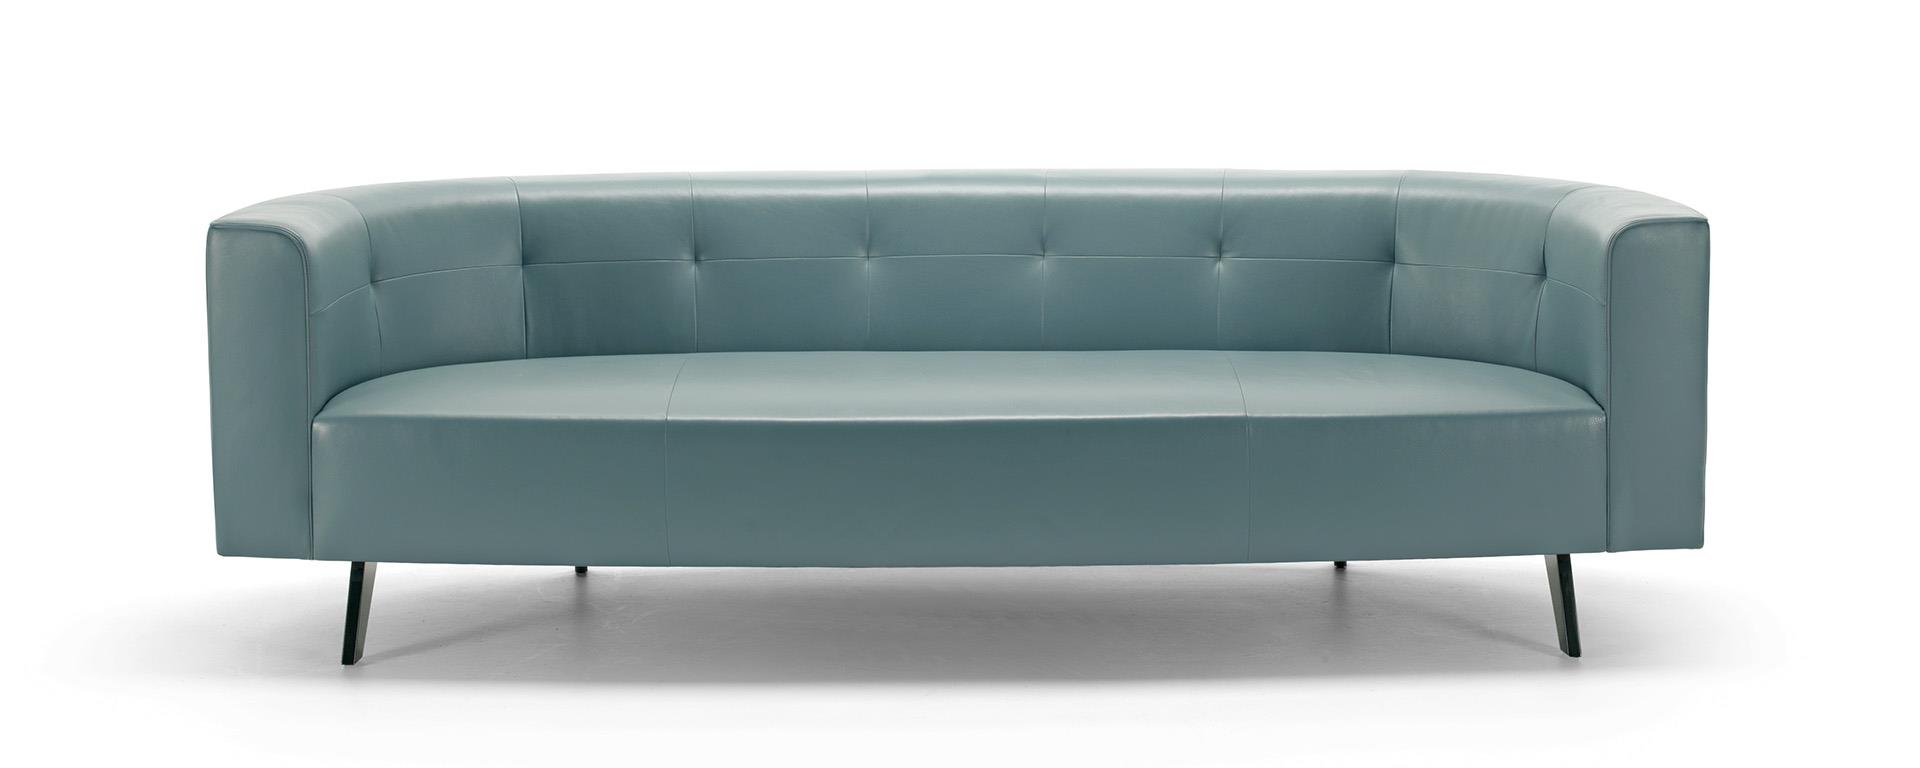 Unique Large Sofa 254 cm